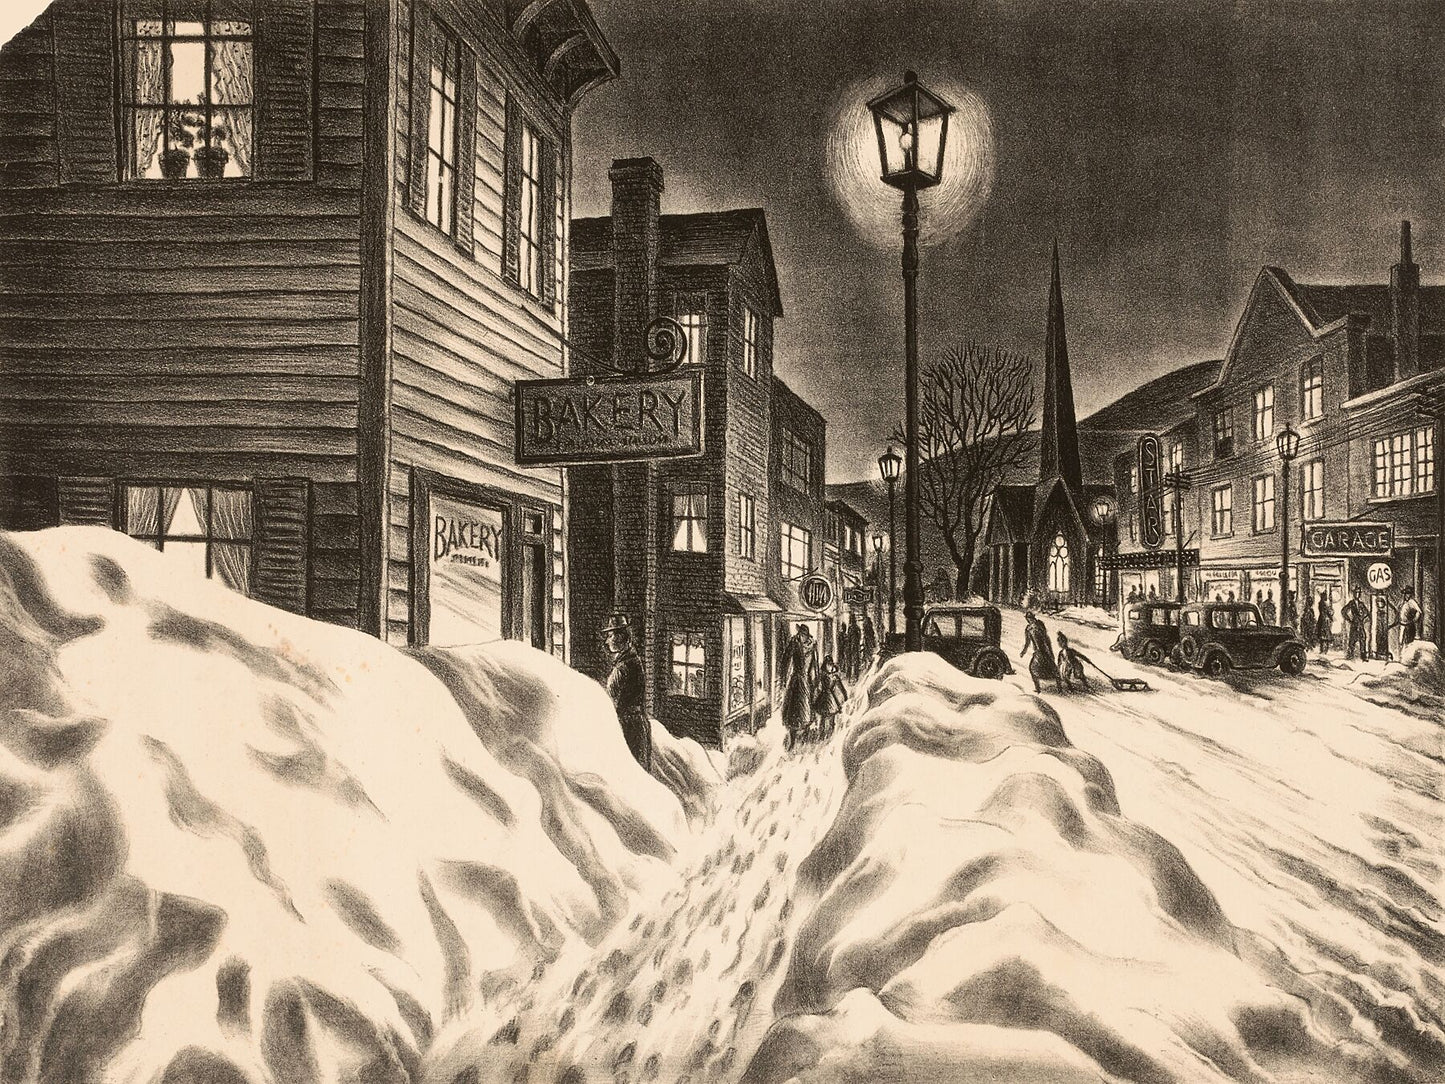 Village Street on a Winter Night, unknown artist - c.1940